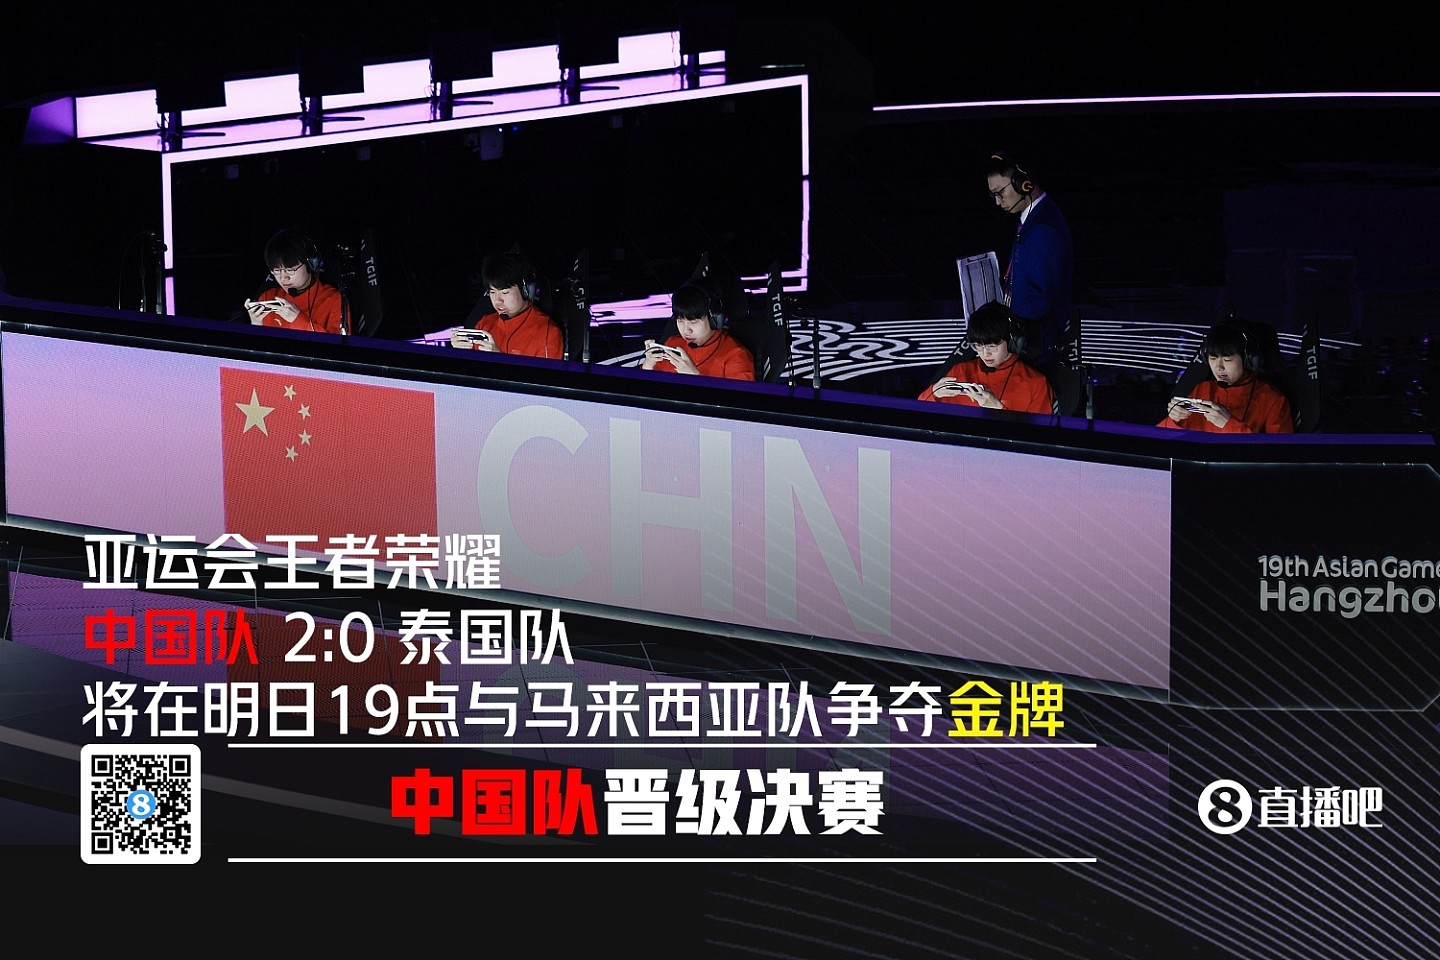 央视新闻分享：今日亚运会观赛指南 电子竞技决出亚运历史首金 - 1